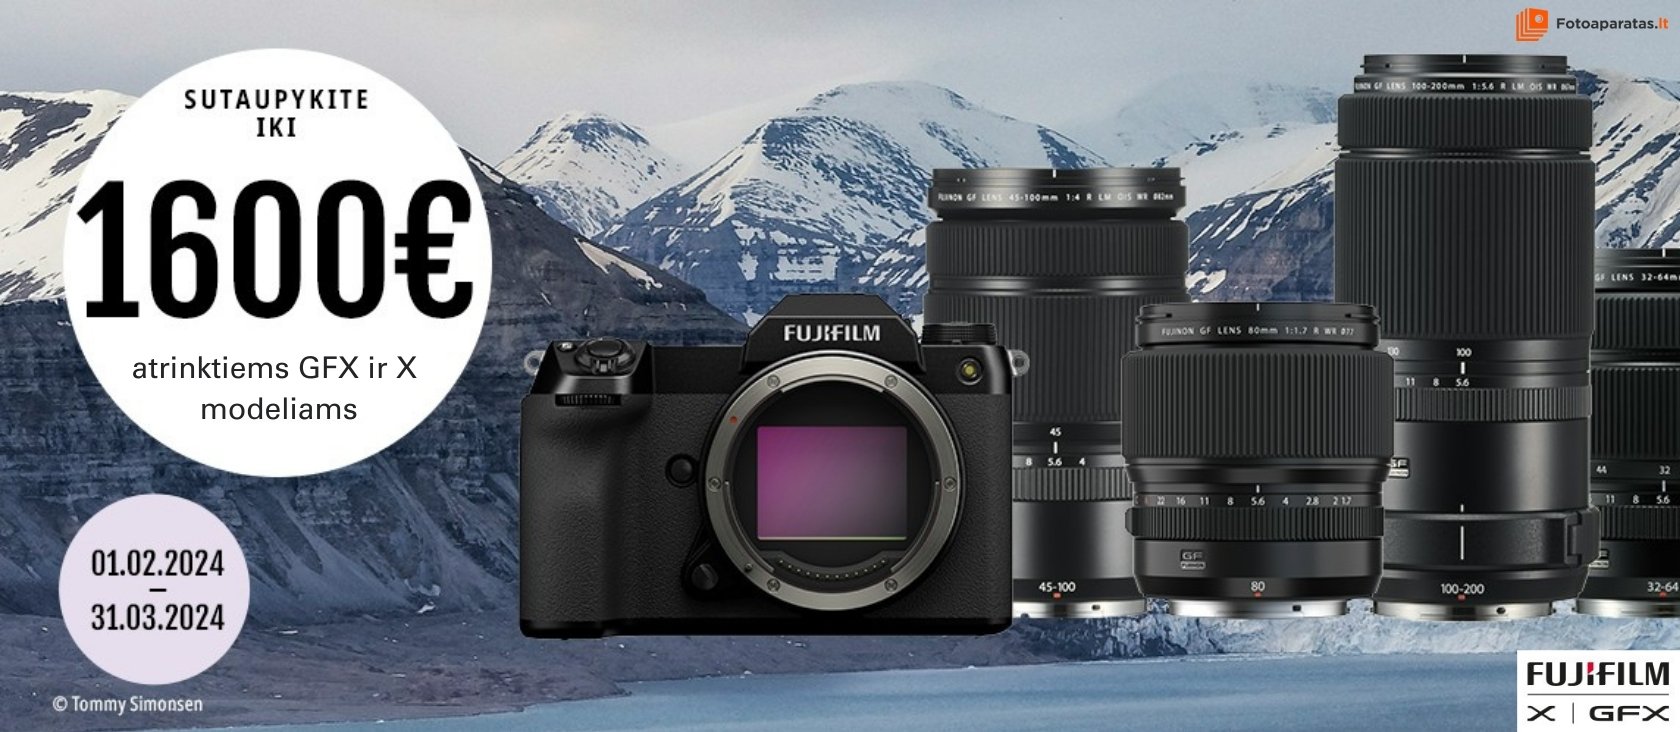 Įsigykite atrinktus Fujifilm GFX ir X produktus ir sutaupykite net iki 1600 eur!